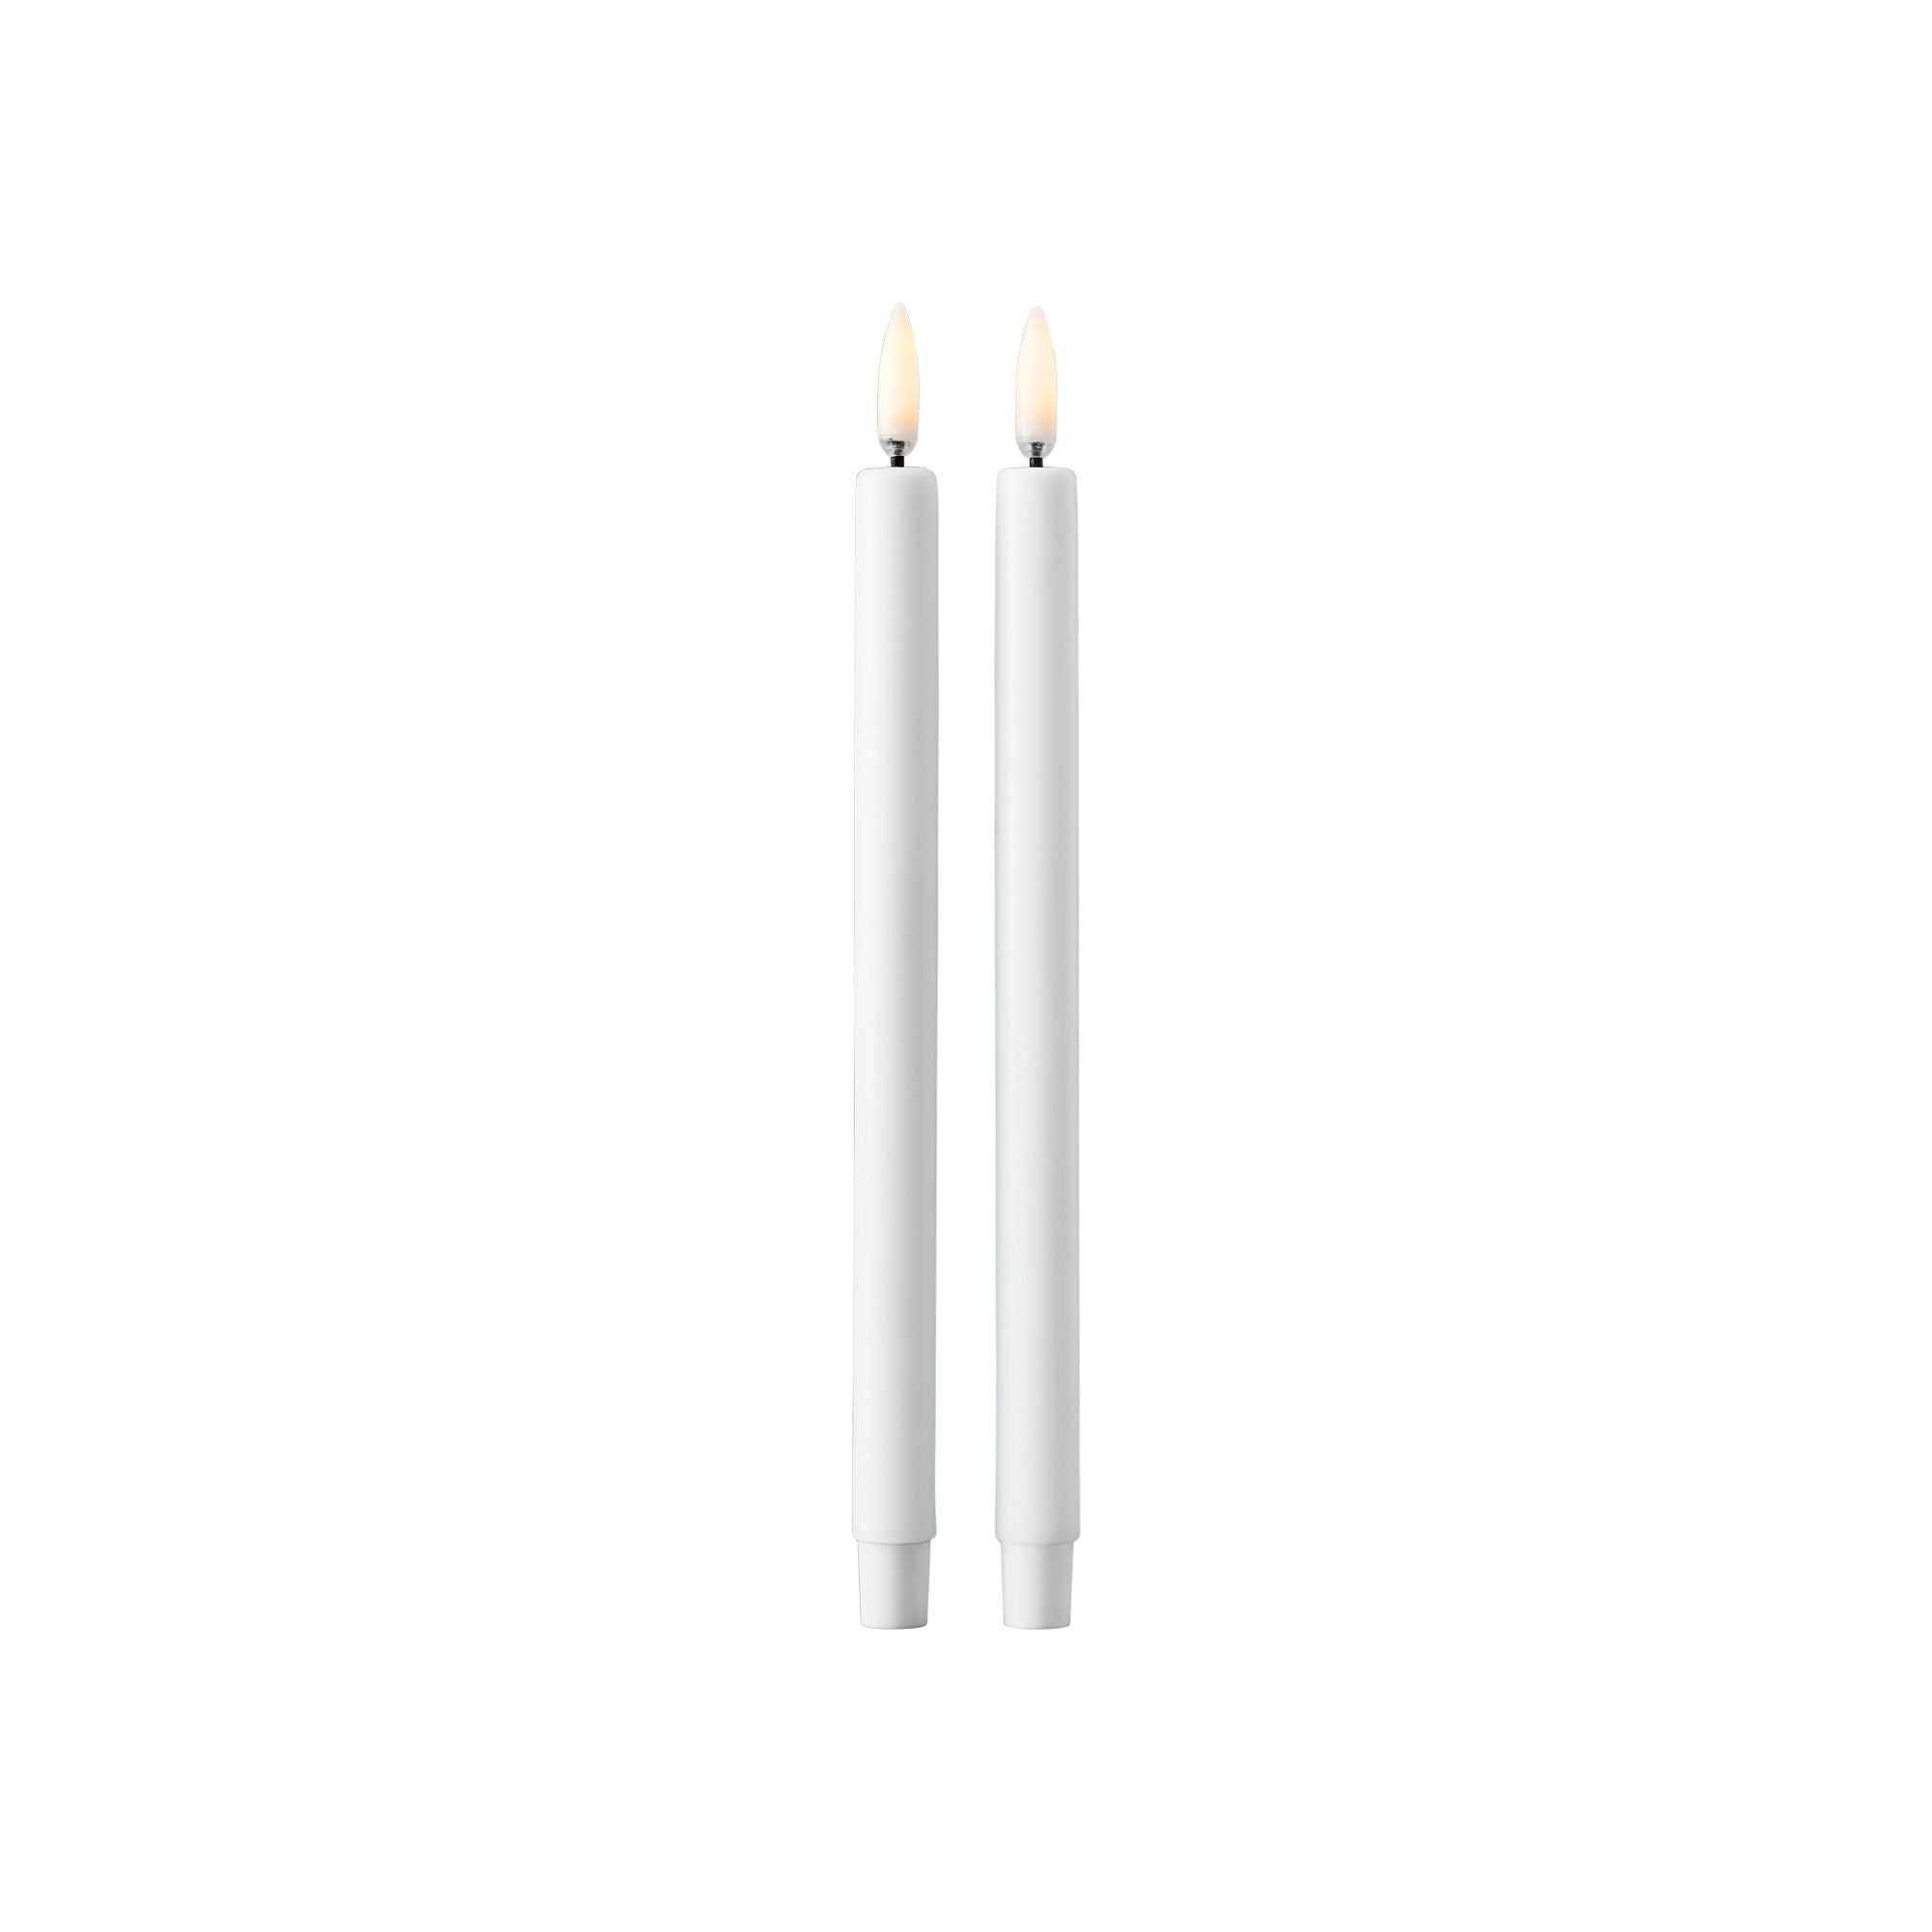 Stoff Nagel LED Candles por Uyuni Ilumining Set of 2, White